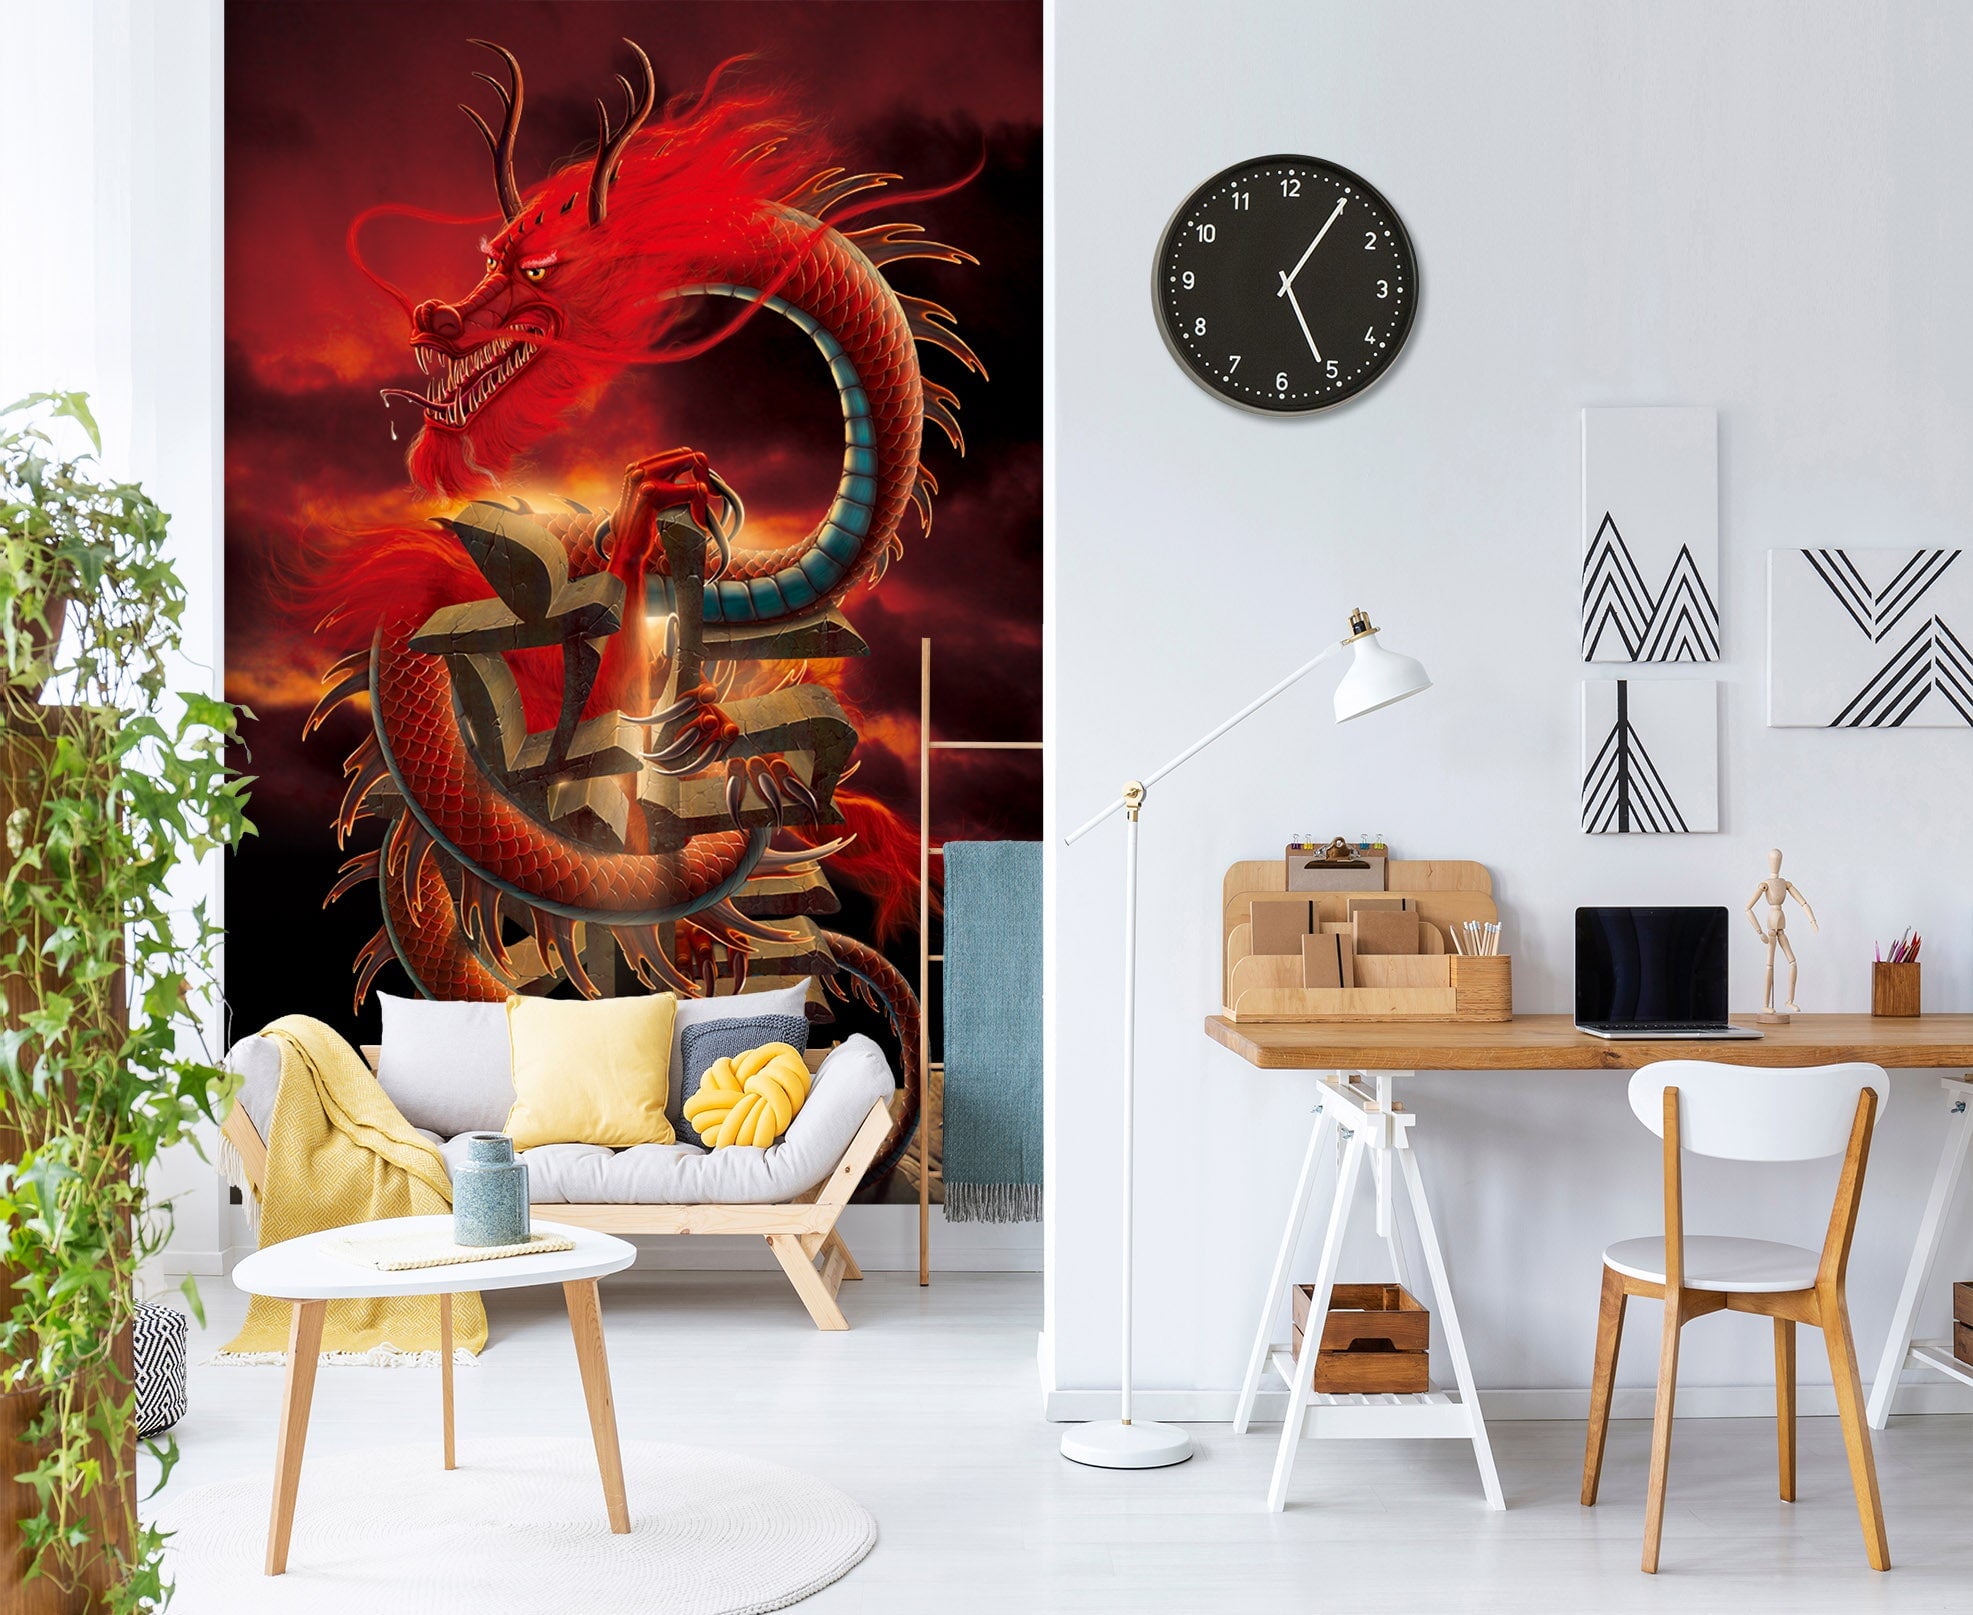 3D Red Dragon 1421 Wall Murals Exclusive Designer Vincent Wallpaper AJ Wallpaper 